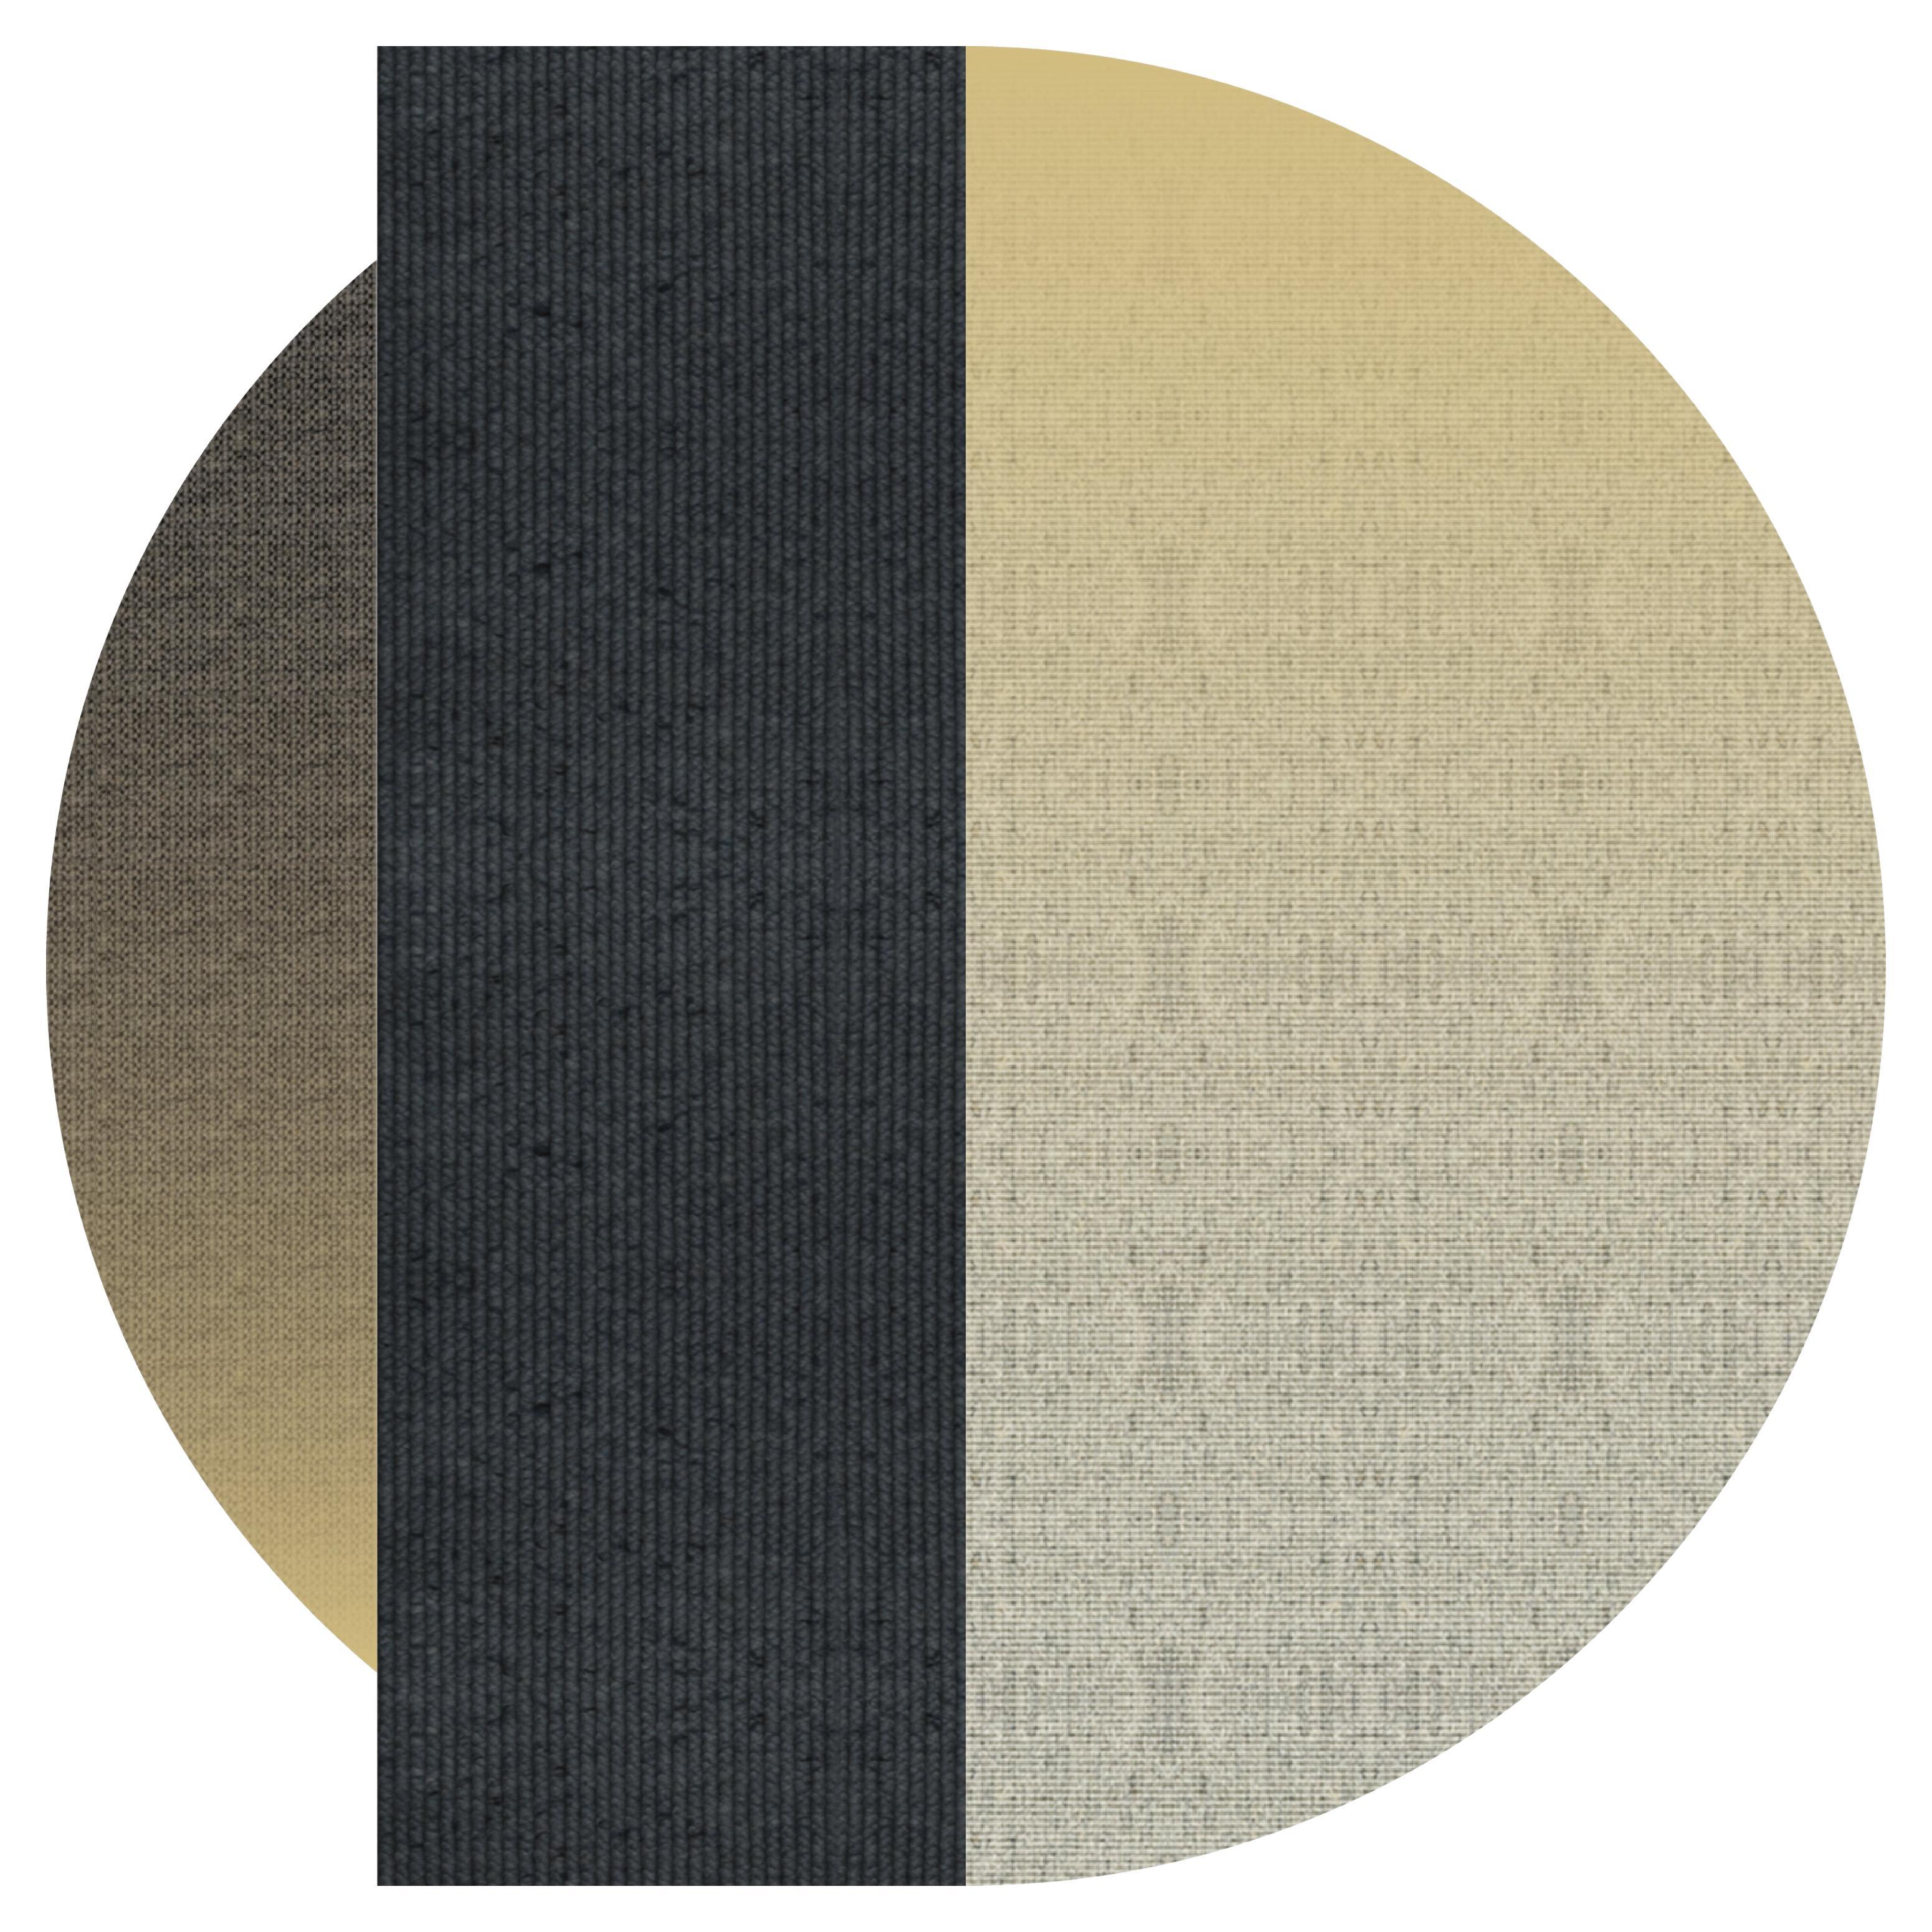 Teppich 'Flux' aus Abaca, Farbe 'Pampas', Ø 200cm von Claire Vos für Musett Design